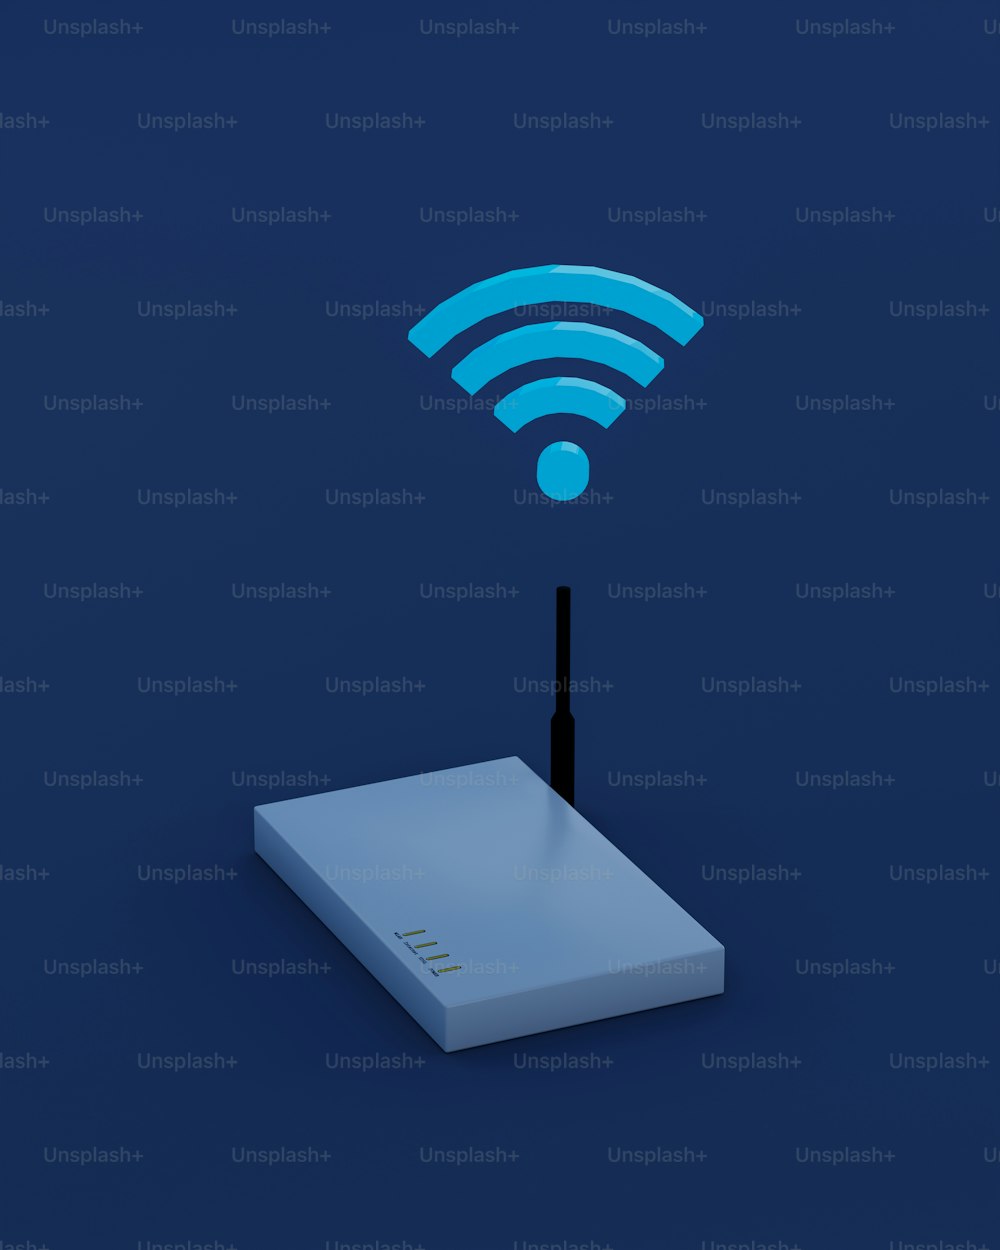 Un appareil sans fil avec un symbole WiFi sur le dessus